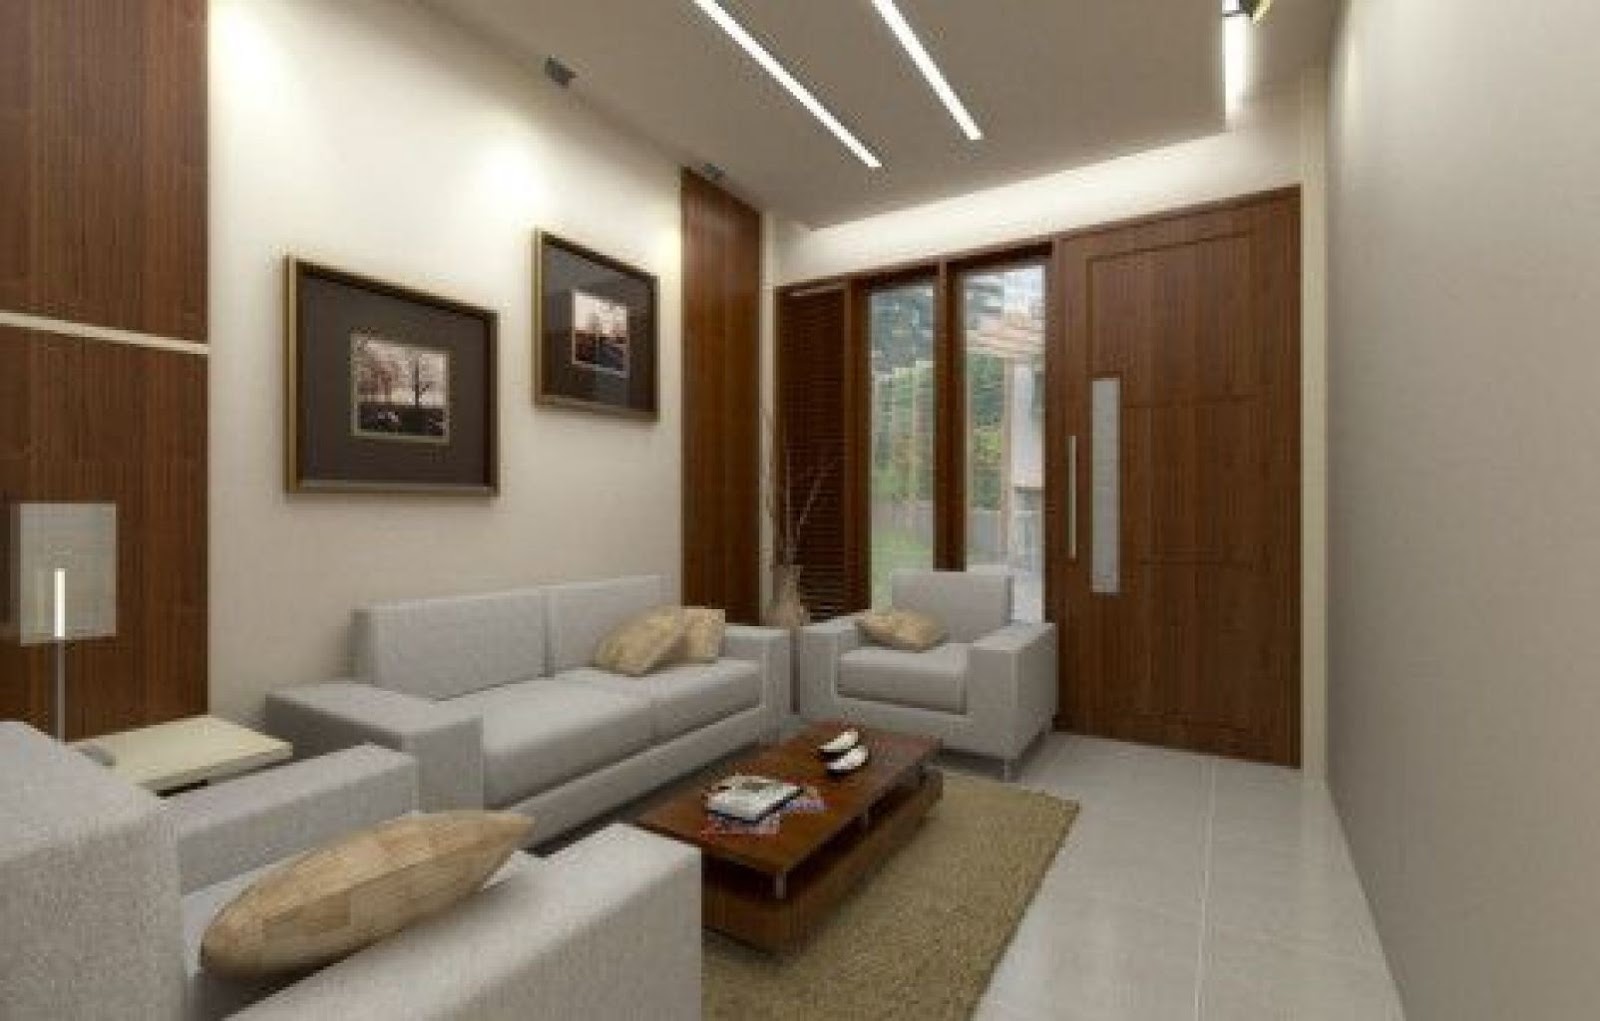  Desain  Interior Ruang Tamu Terbaru  2019  Rumah  Minimalis  